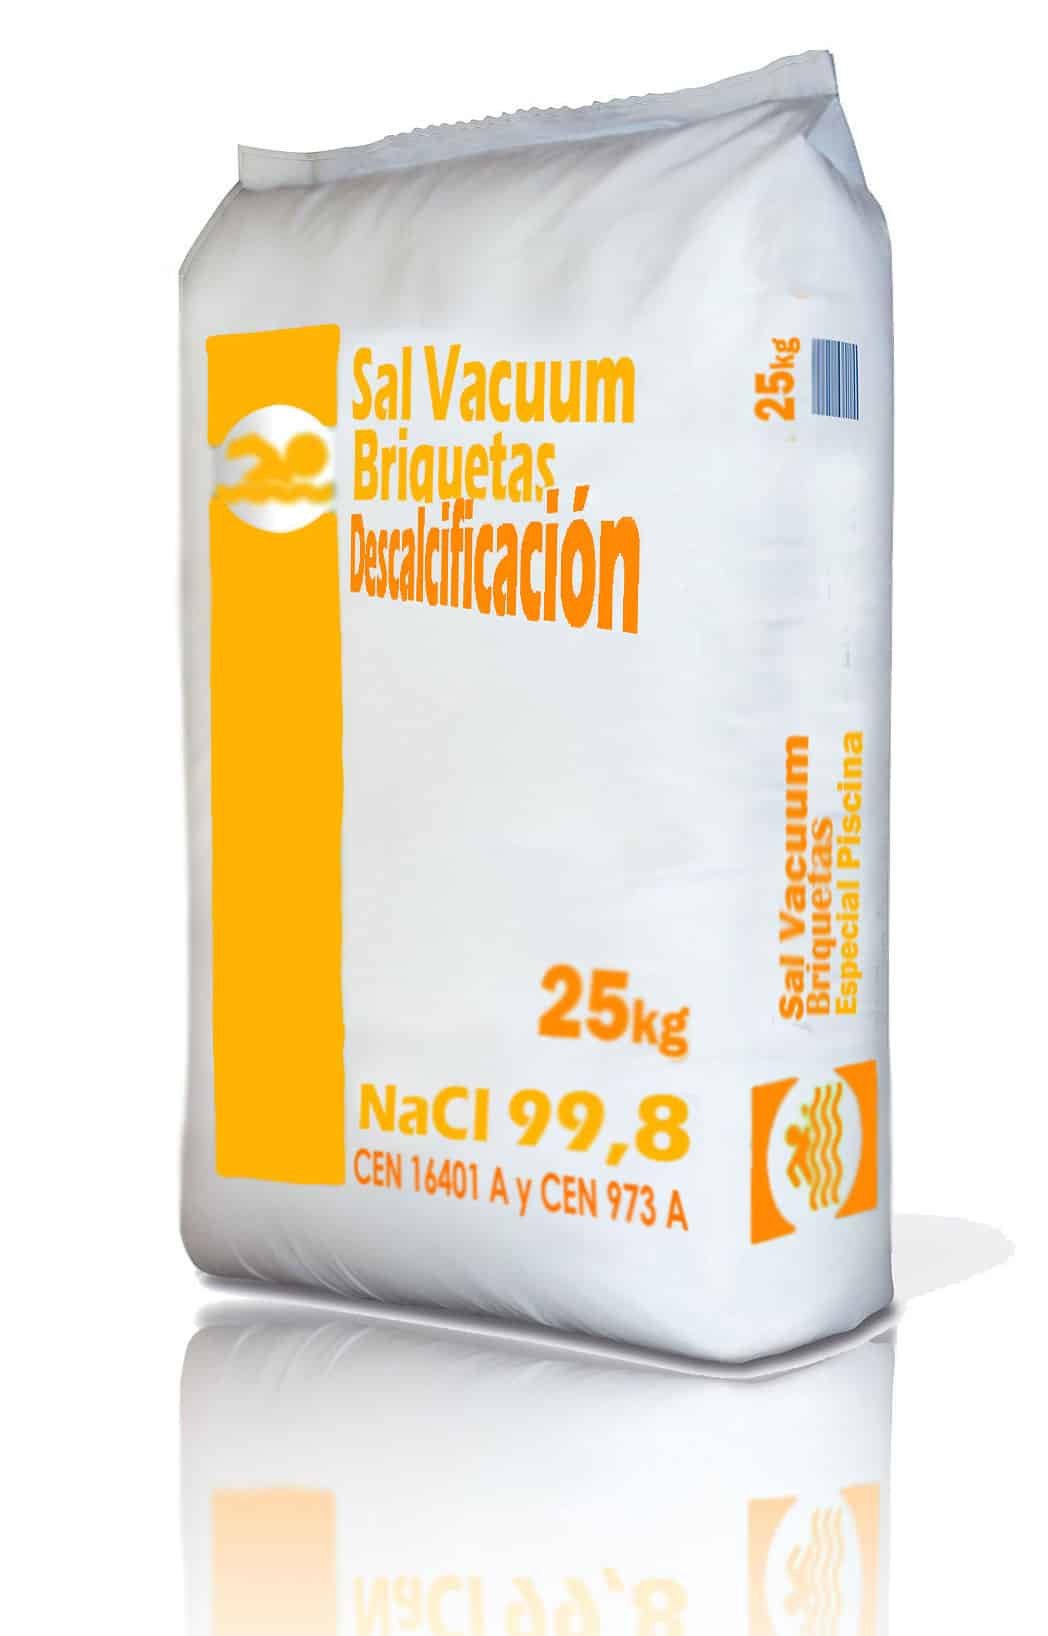 Sal-Vacuum-Briquetas-DESCALCIFICACION